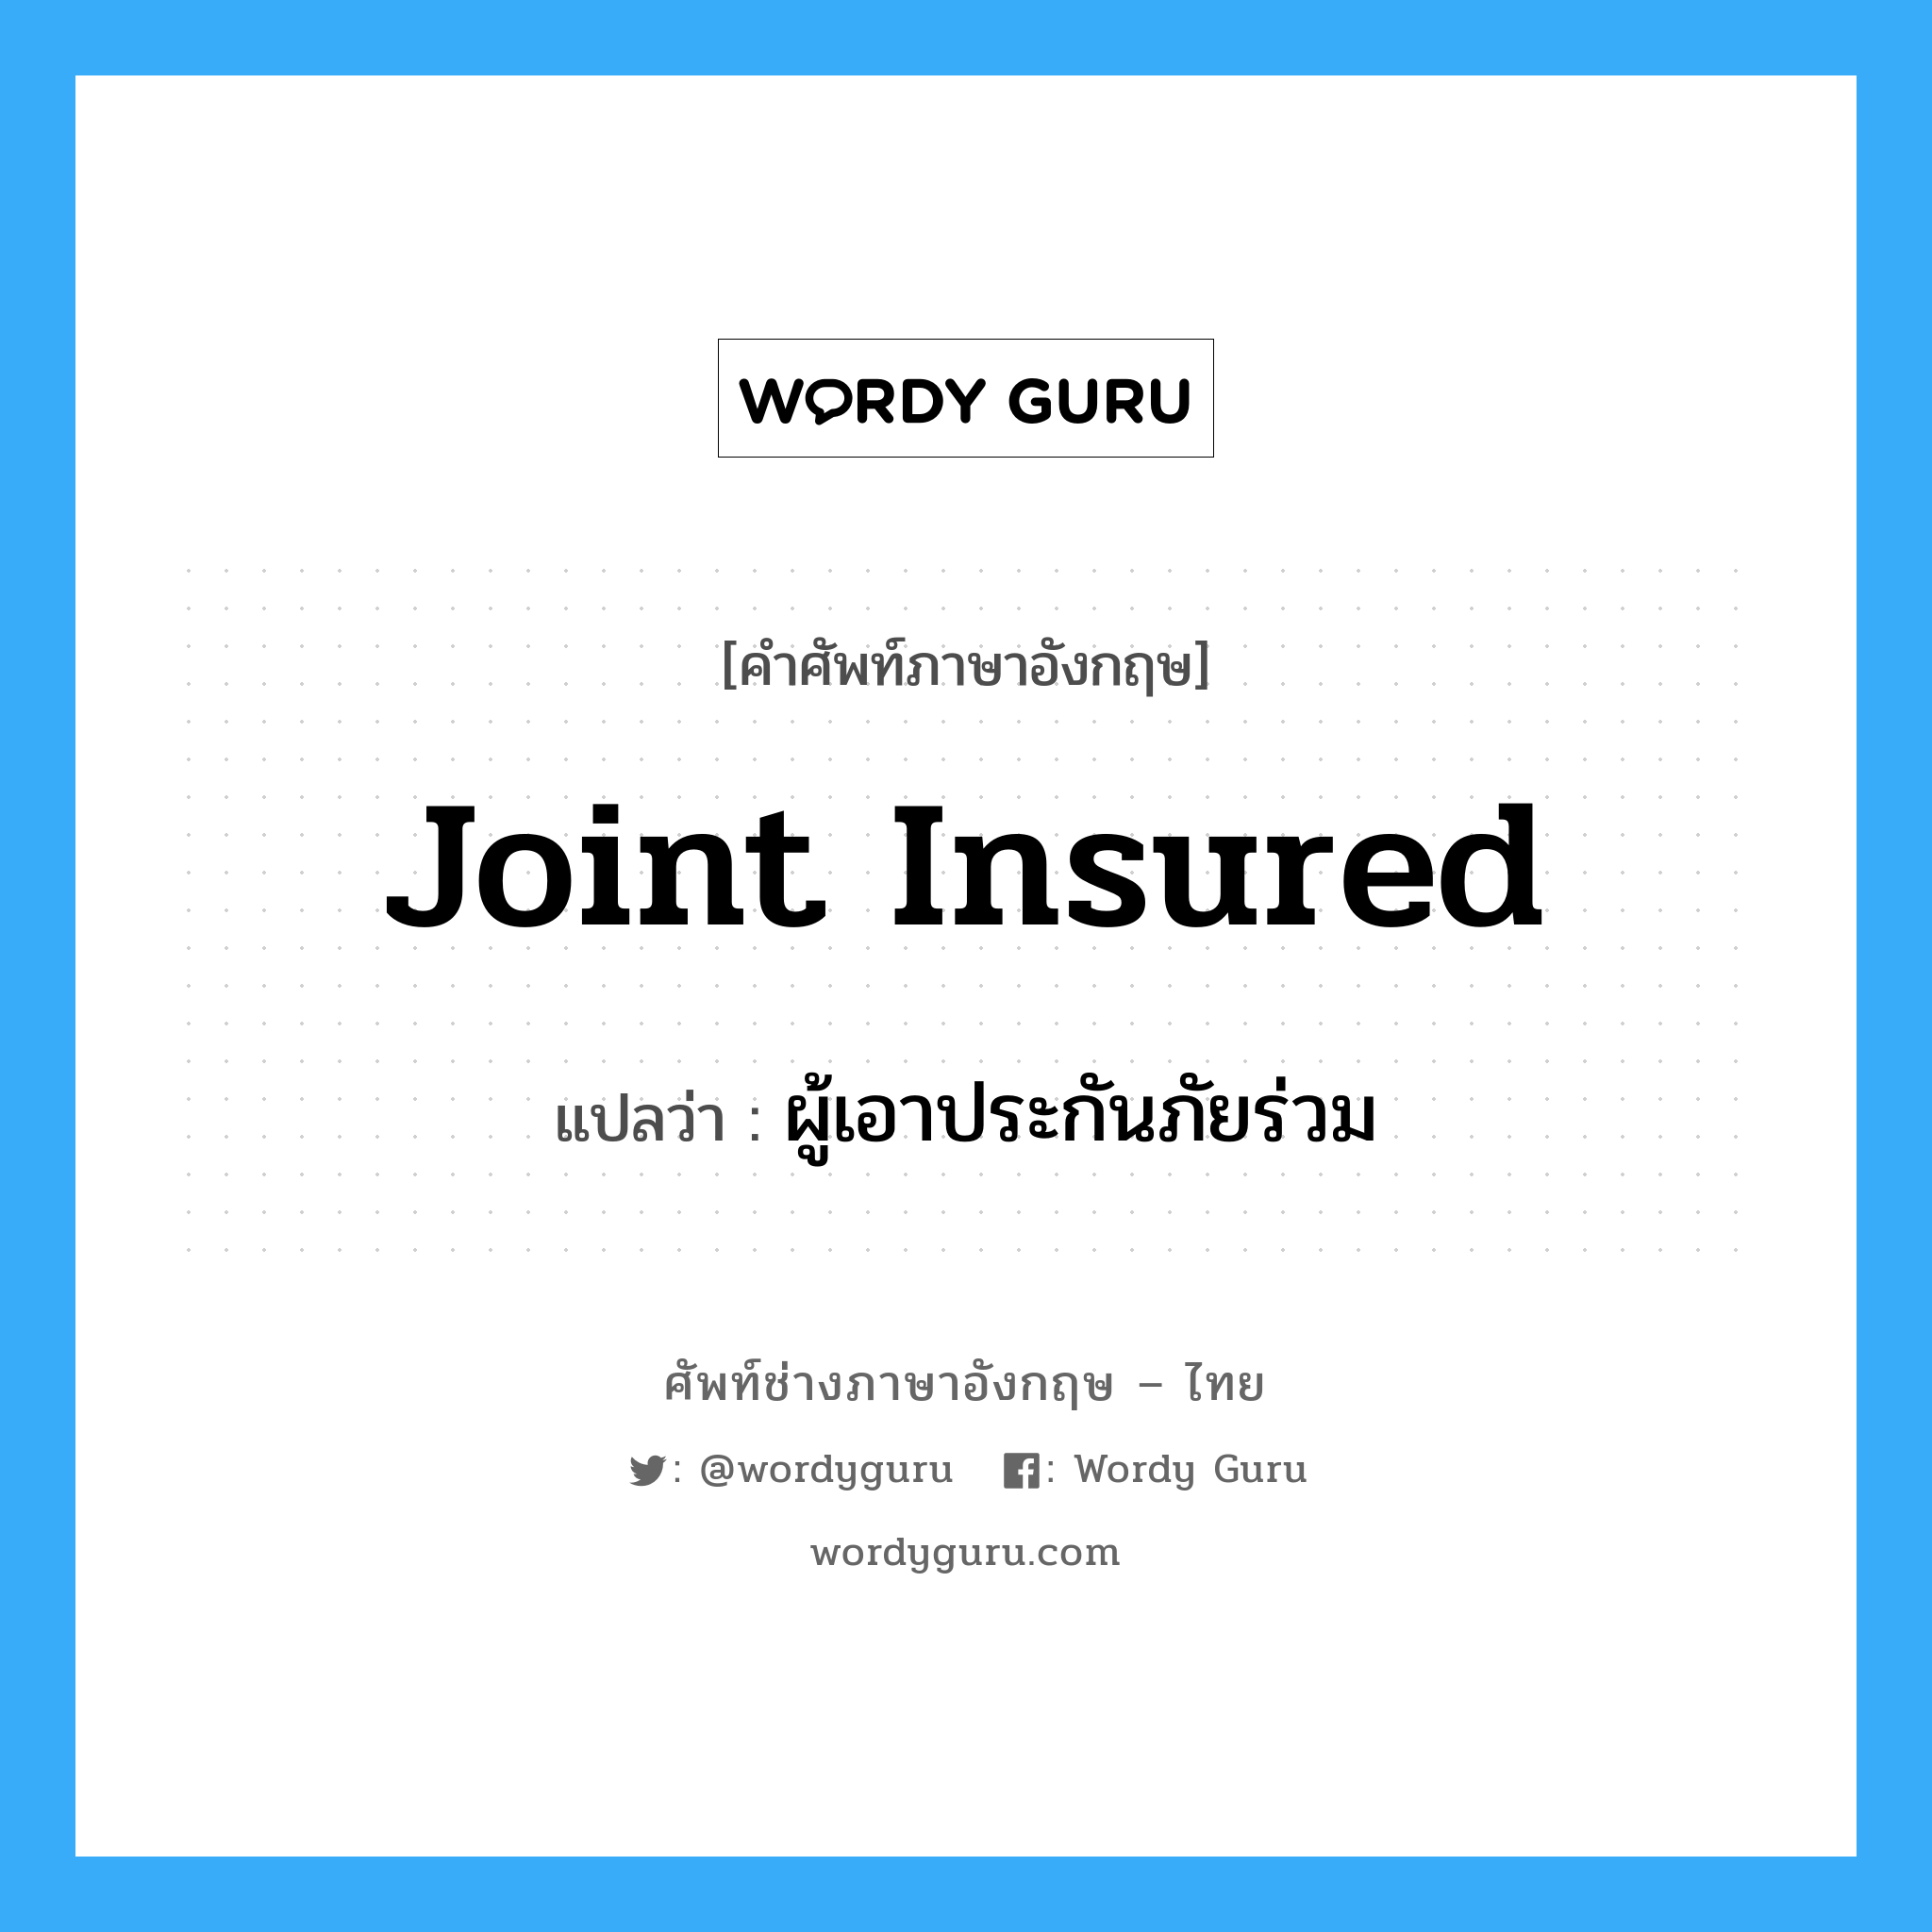 Joint Insured แปลว่า?, คำศัพท์ช่างภาษาอังกฤษ - ไทย Joint Insured คำศัพท์ภาษาอังกฤษ Joint Insured แปลว่า ผู้เอาประกันภัยร่วม